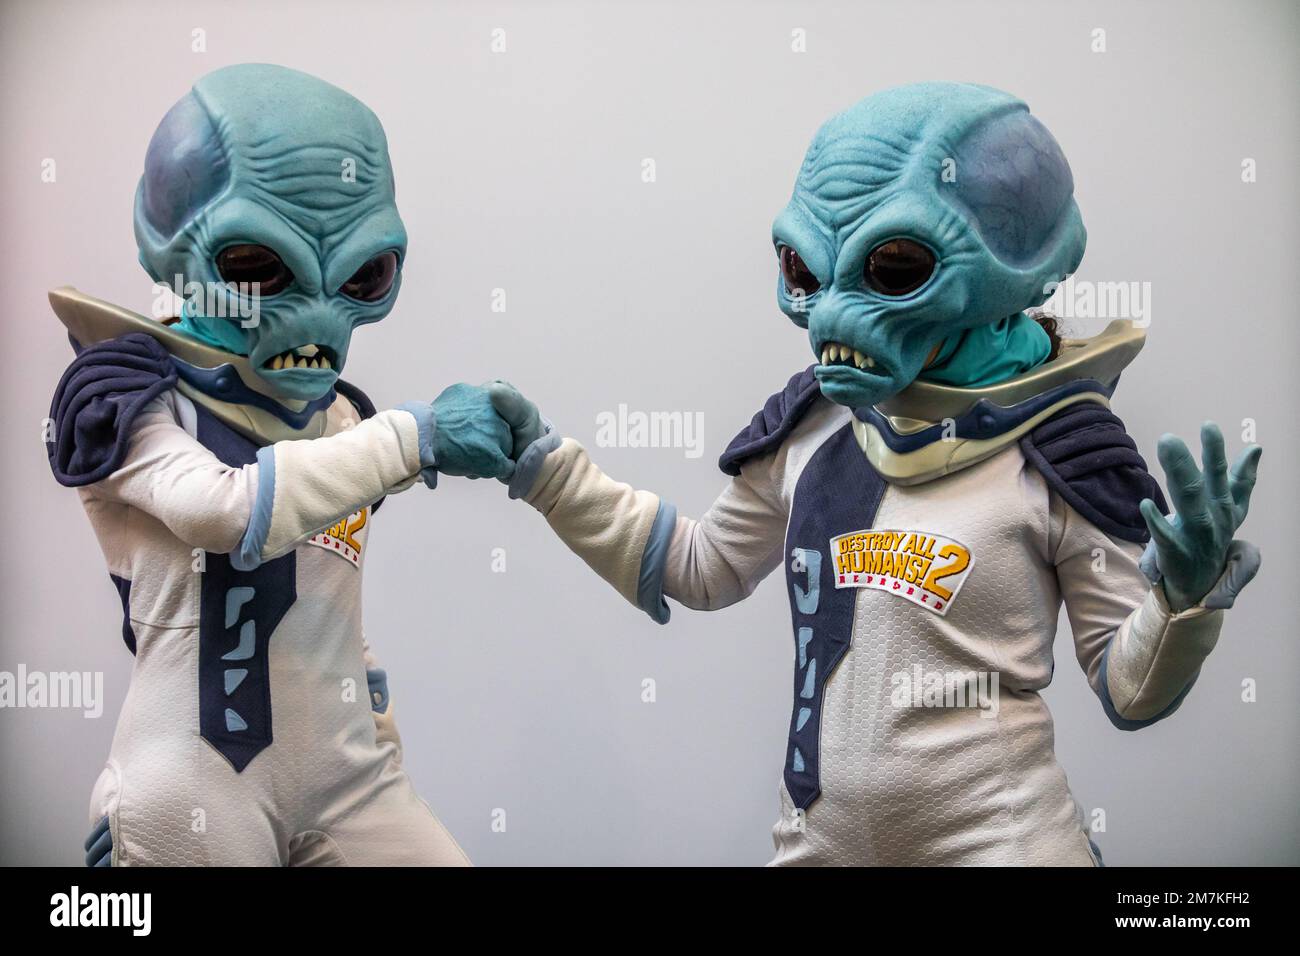 Costume alieno immagini e fotografie stock ad alta risoluzione - Alamy